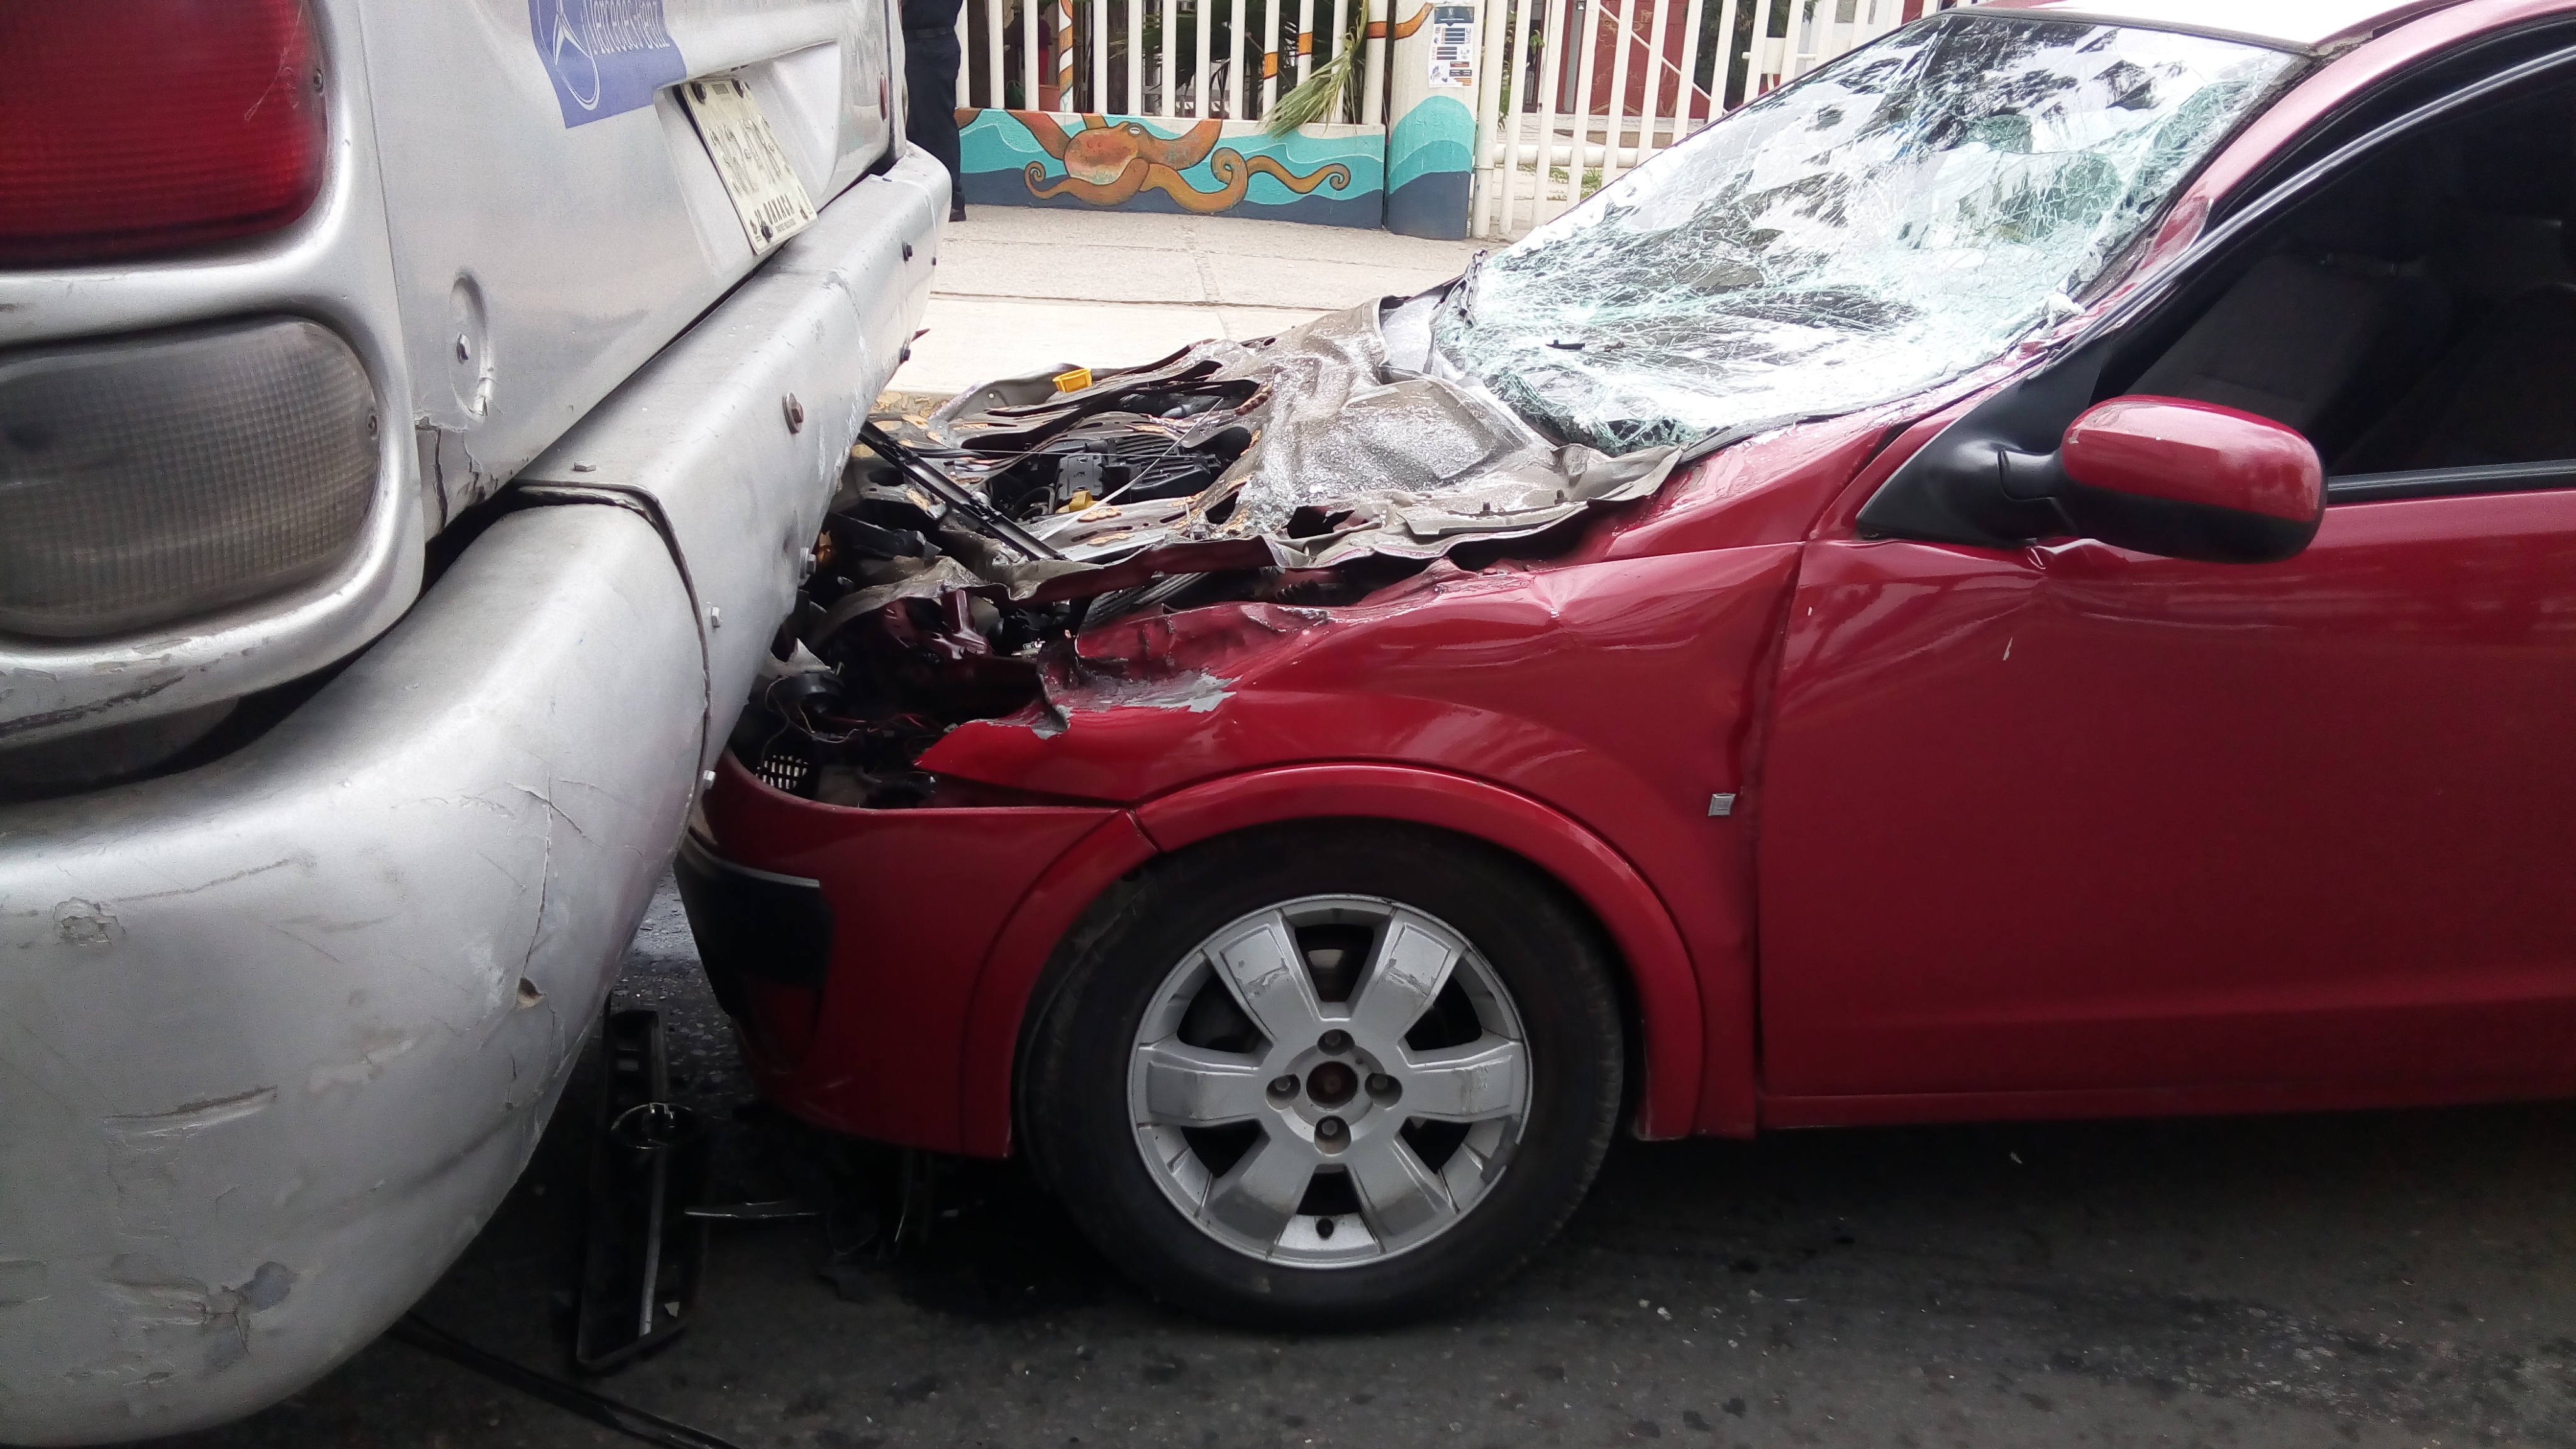 Camioneta queda debajo de urbano al impactarlo en CU | El Imparcial de Oaxaca